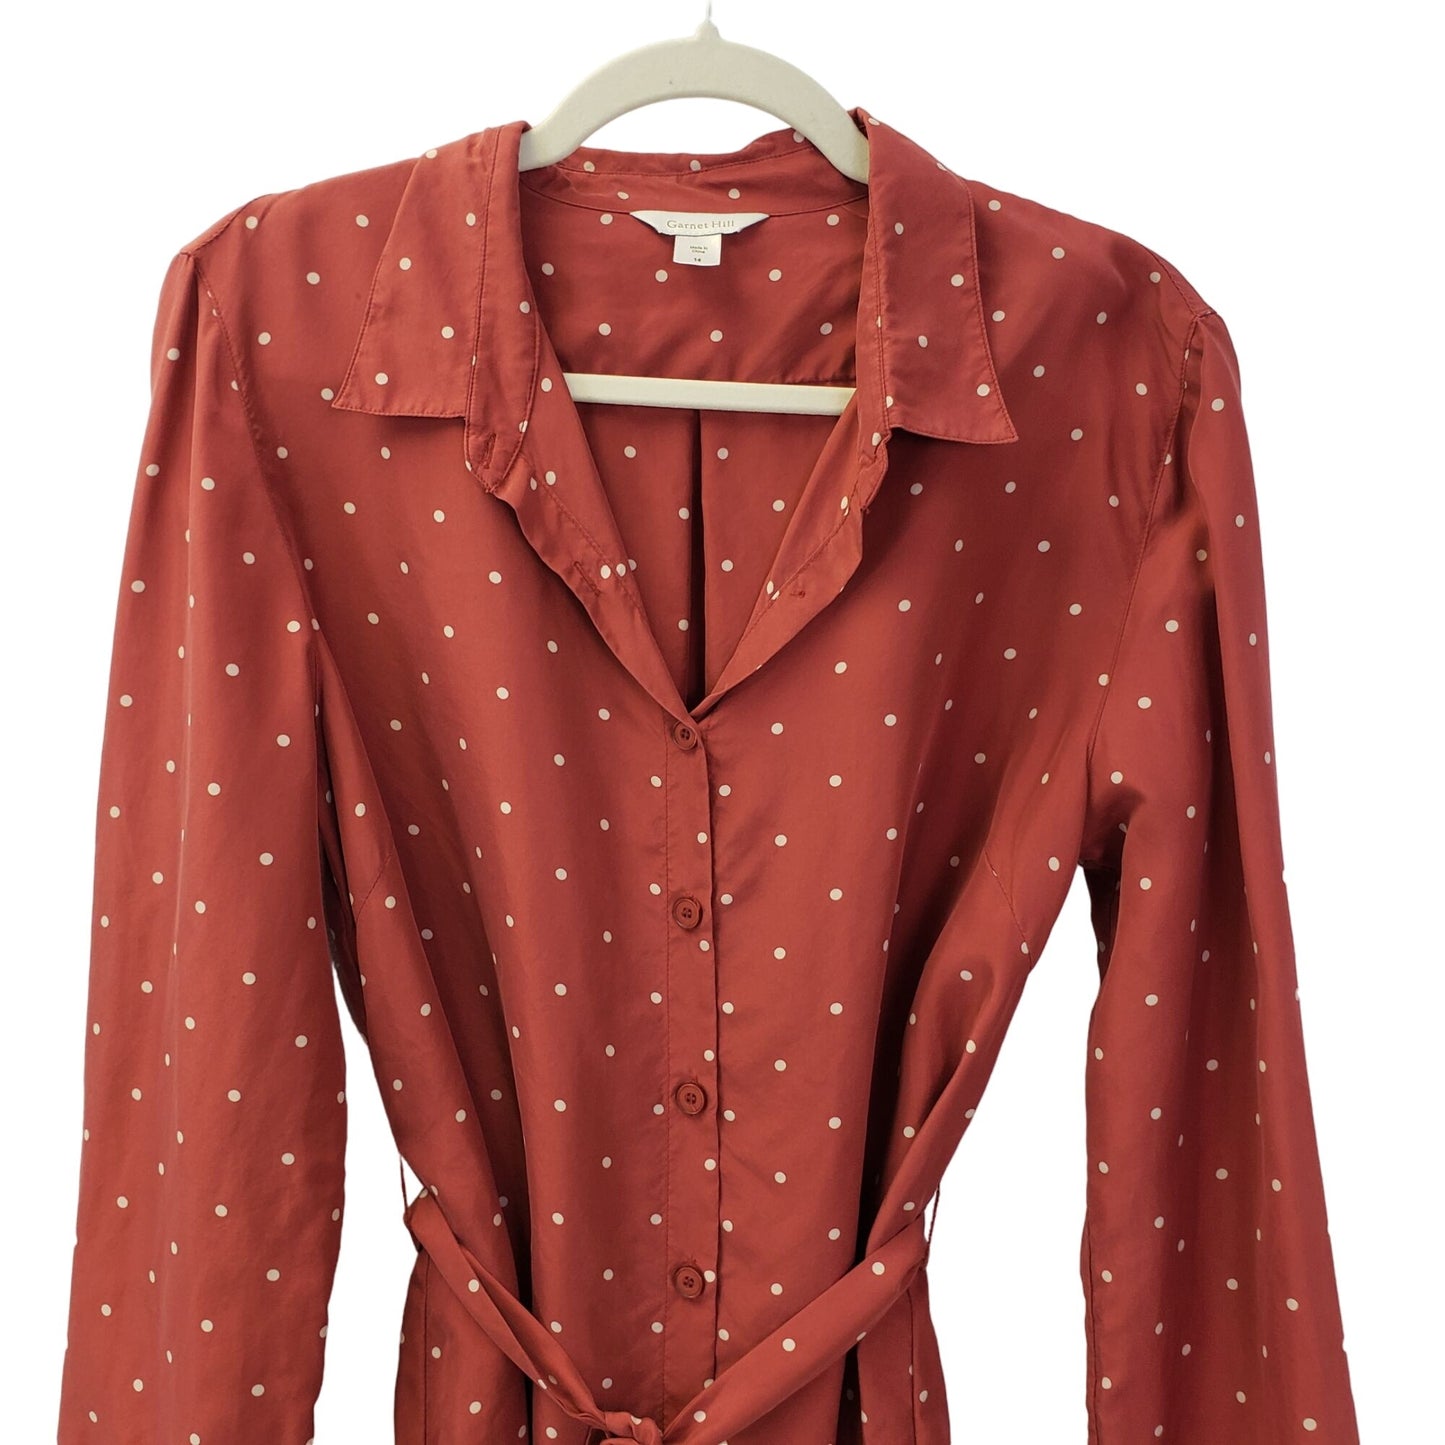 Garnet Hill 100% Silk Polka Dot Shirt Dress Size 14